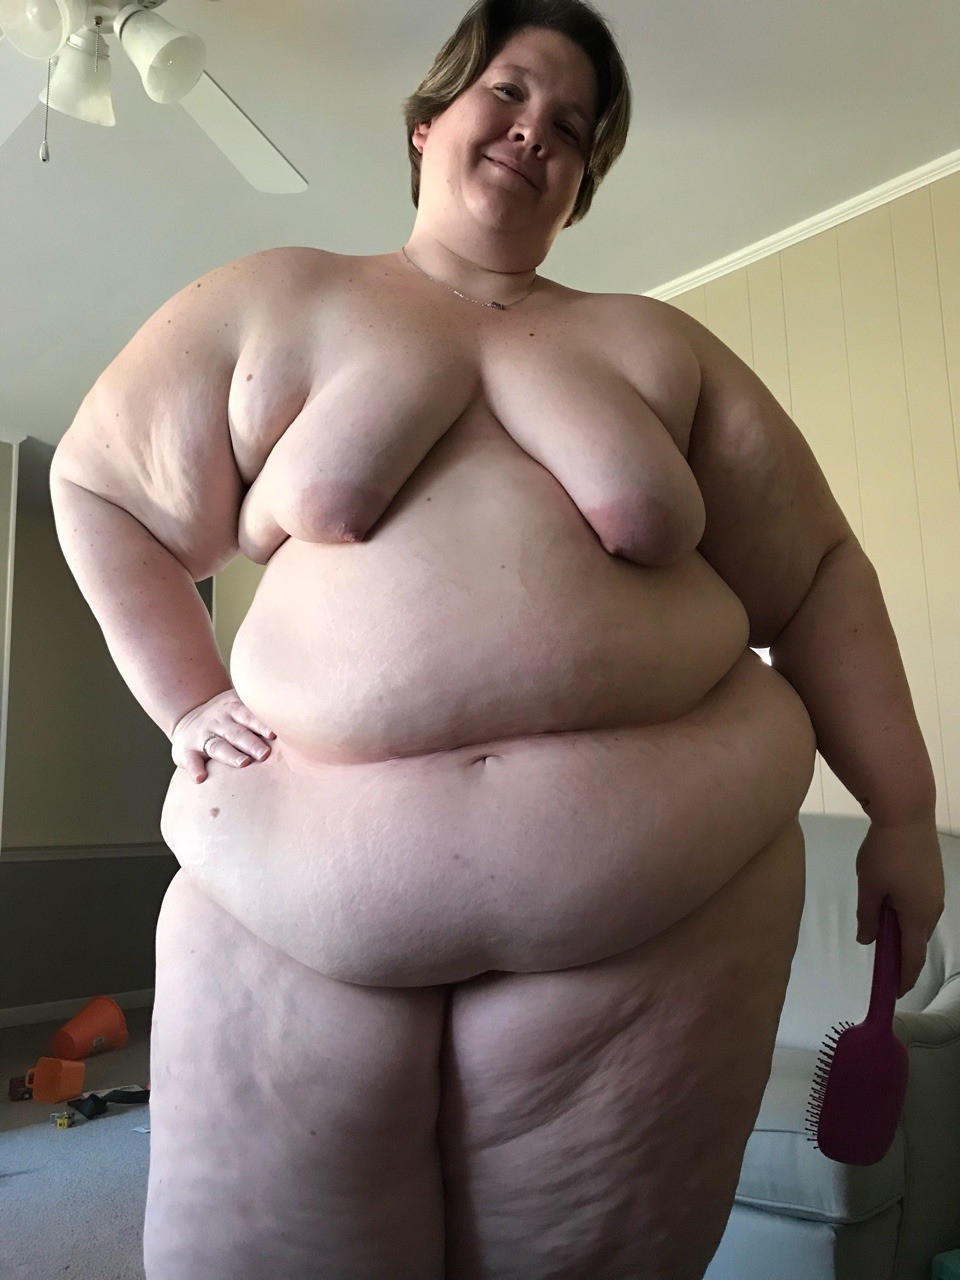 mature chubby naked amature pics free